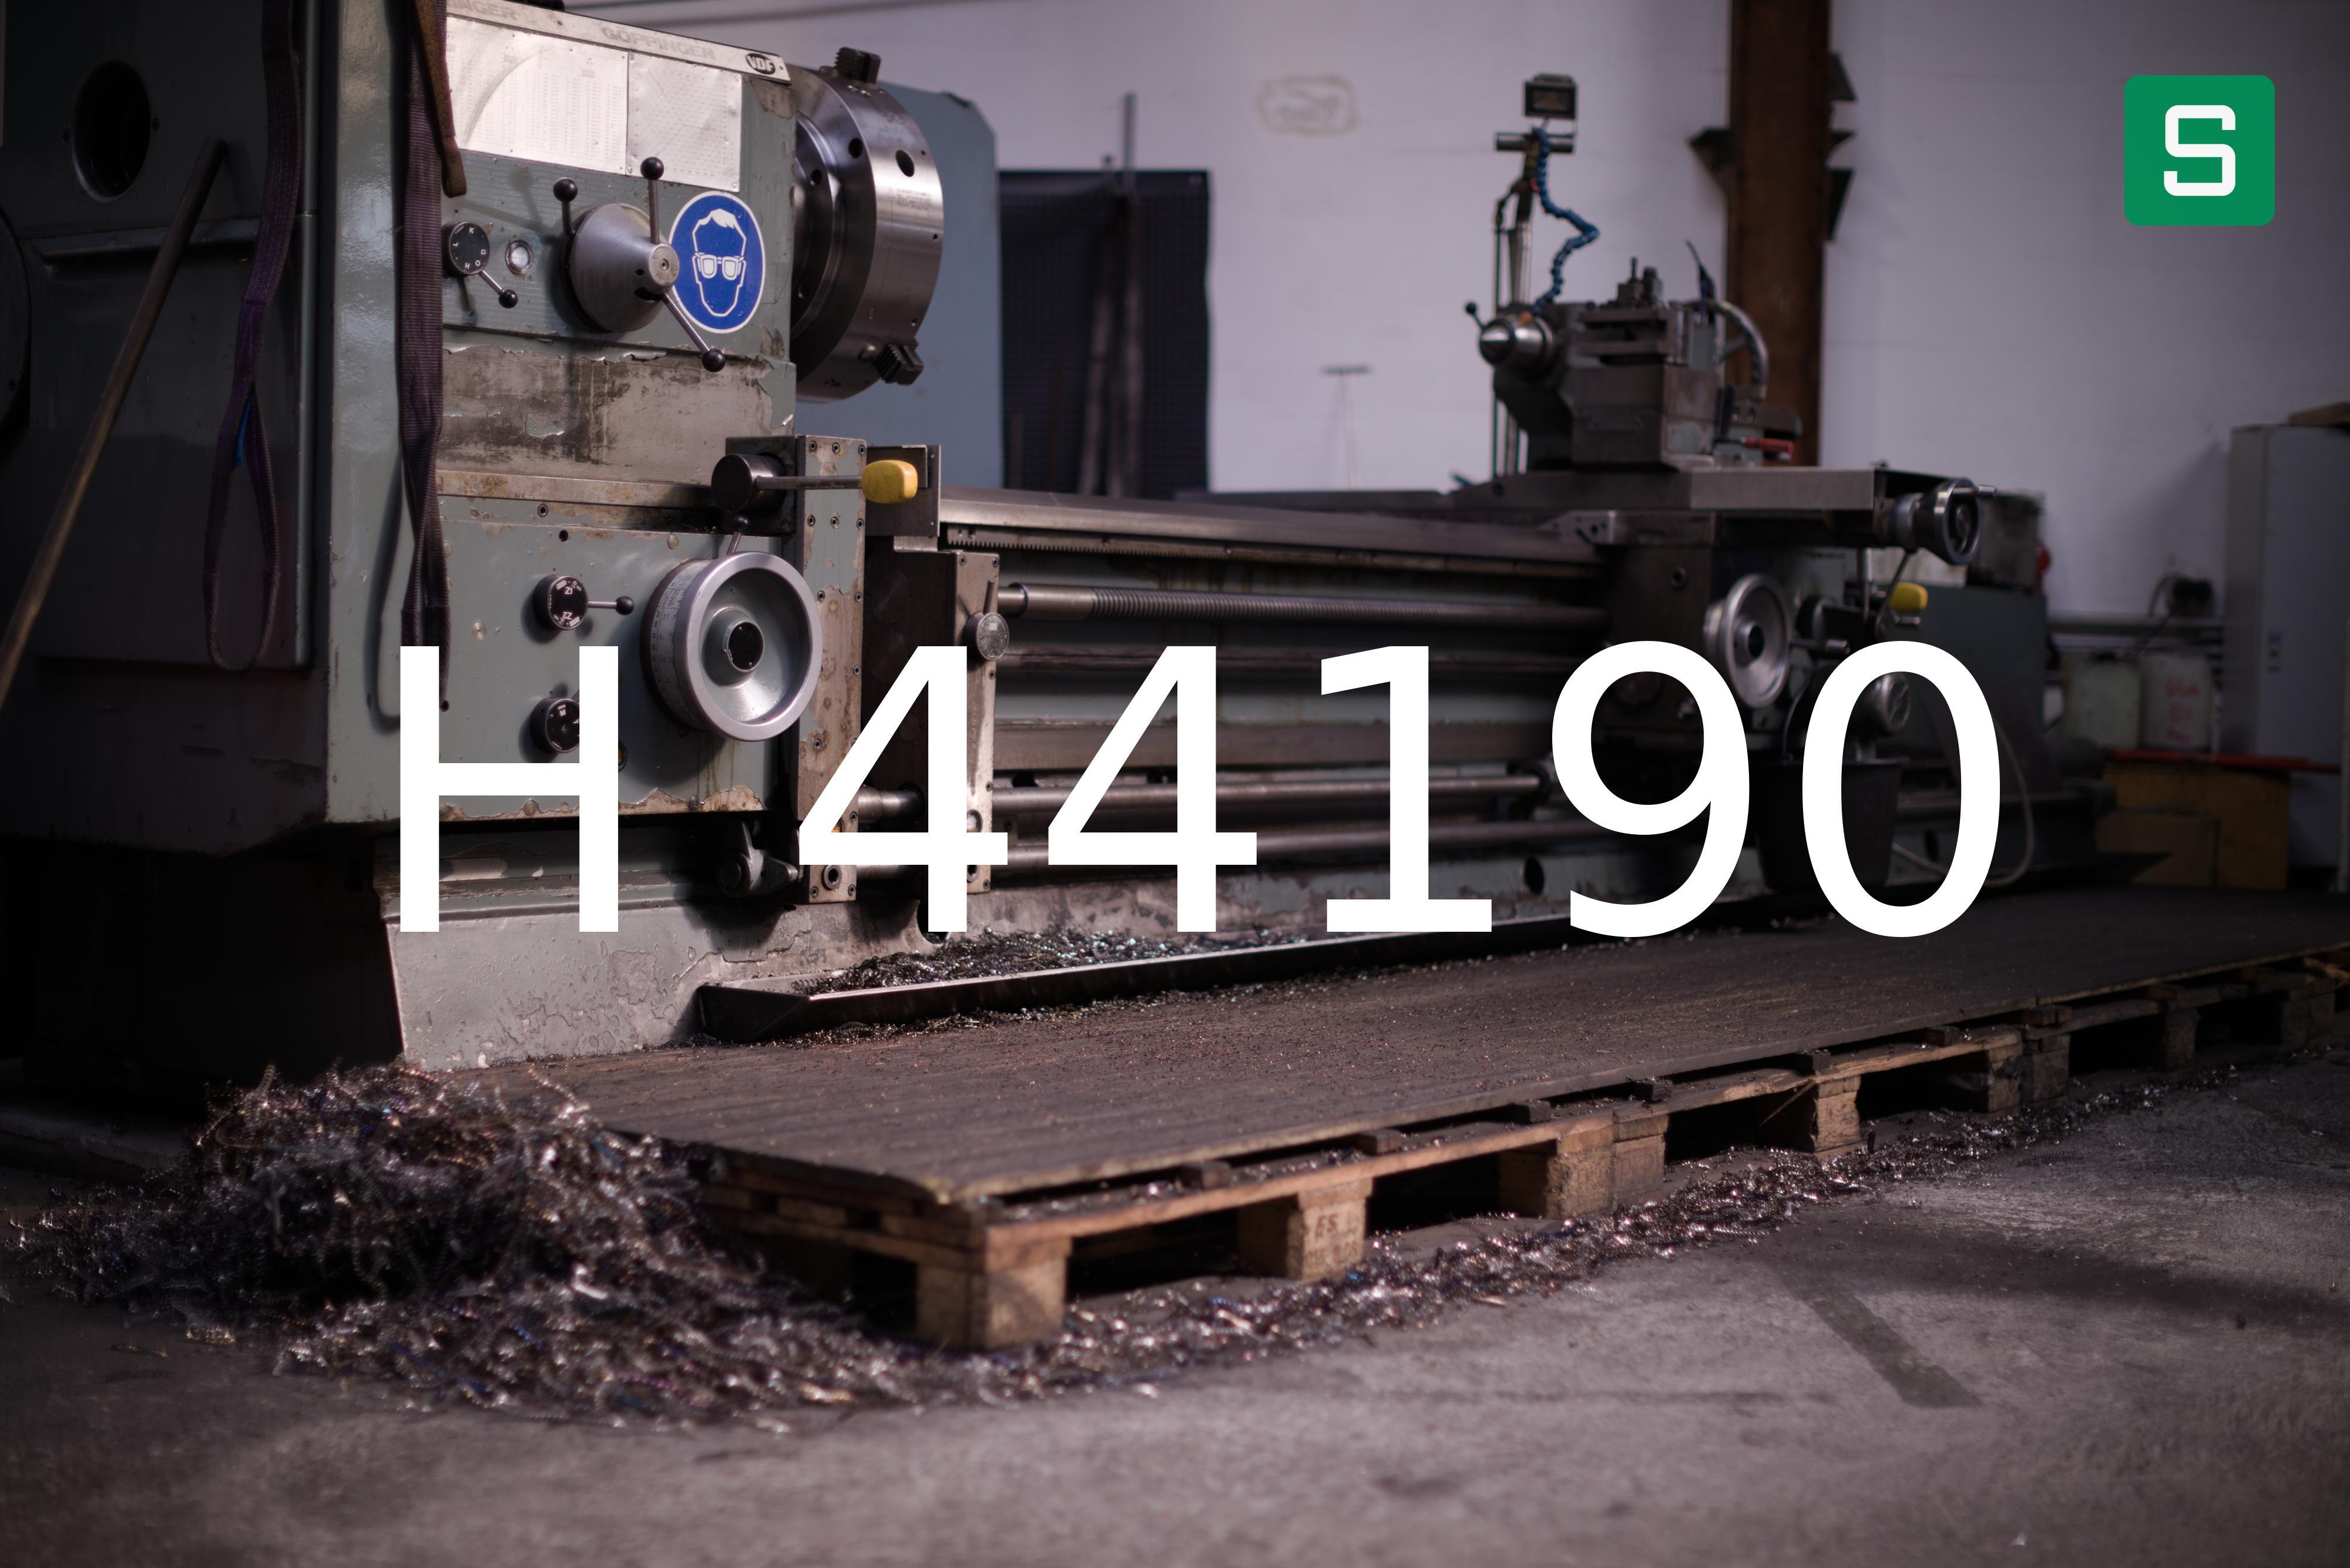 Steel Material: H 44190